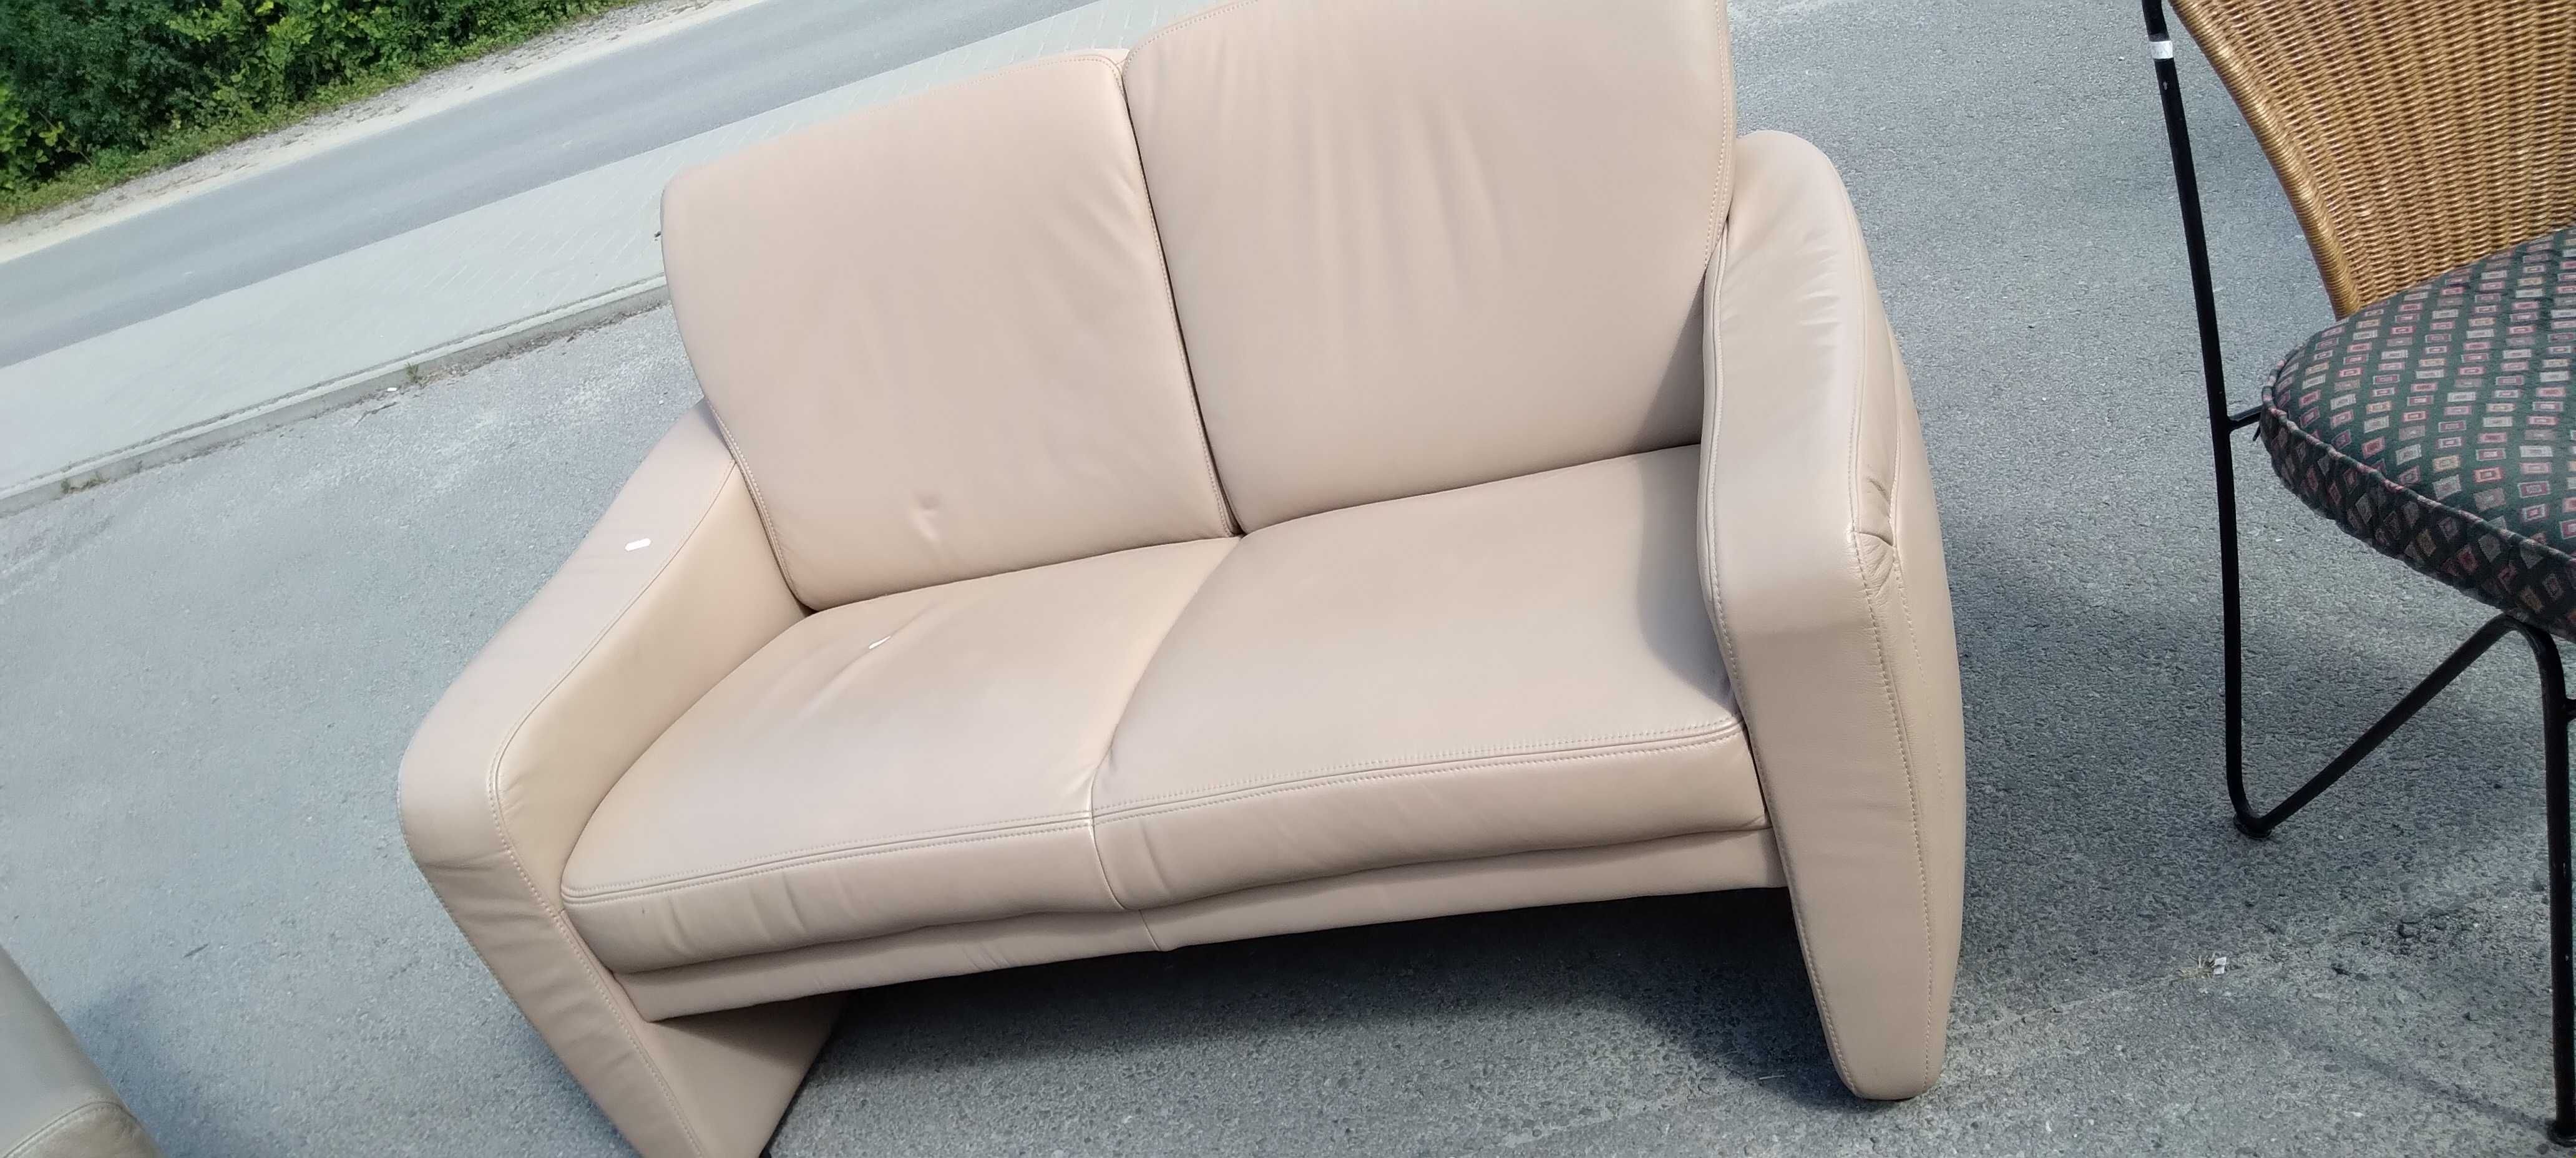 Zestaw wypoczynkowy sofa+fotel 2+1 skórzany skóra naturalna FV DOWÓZ